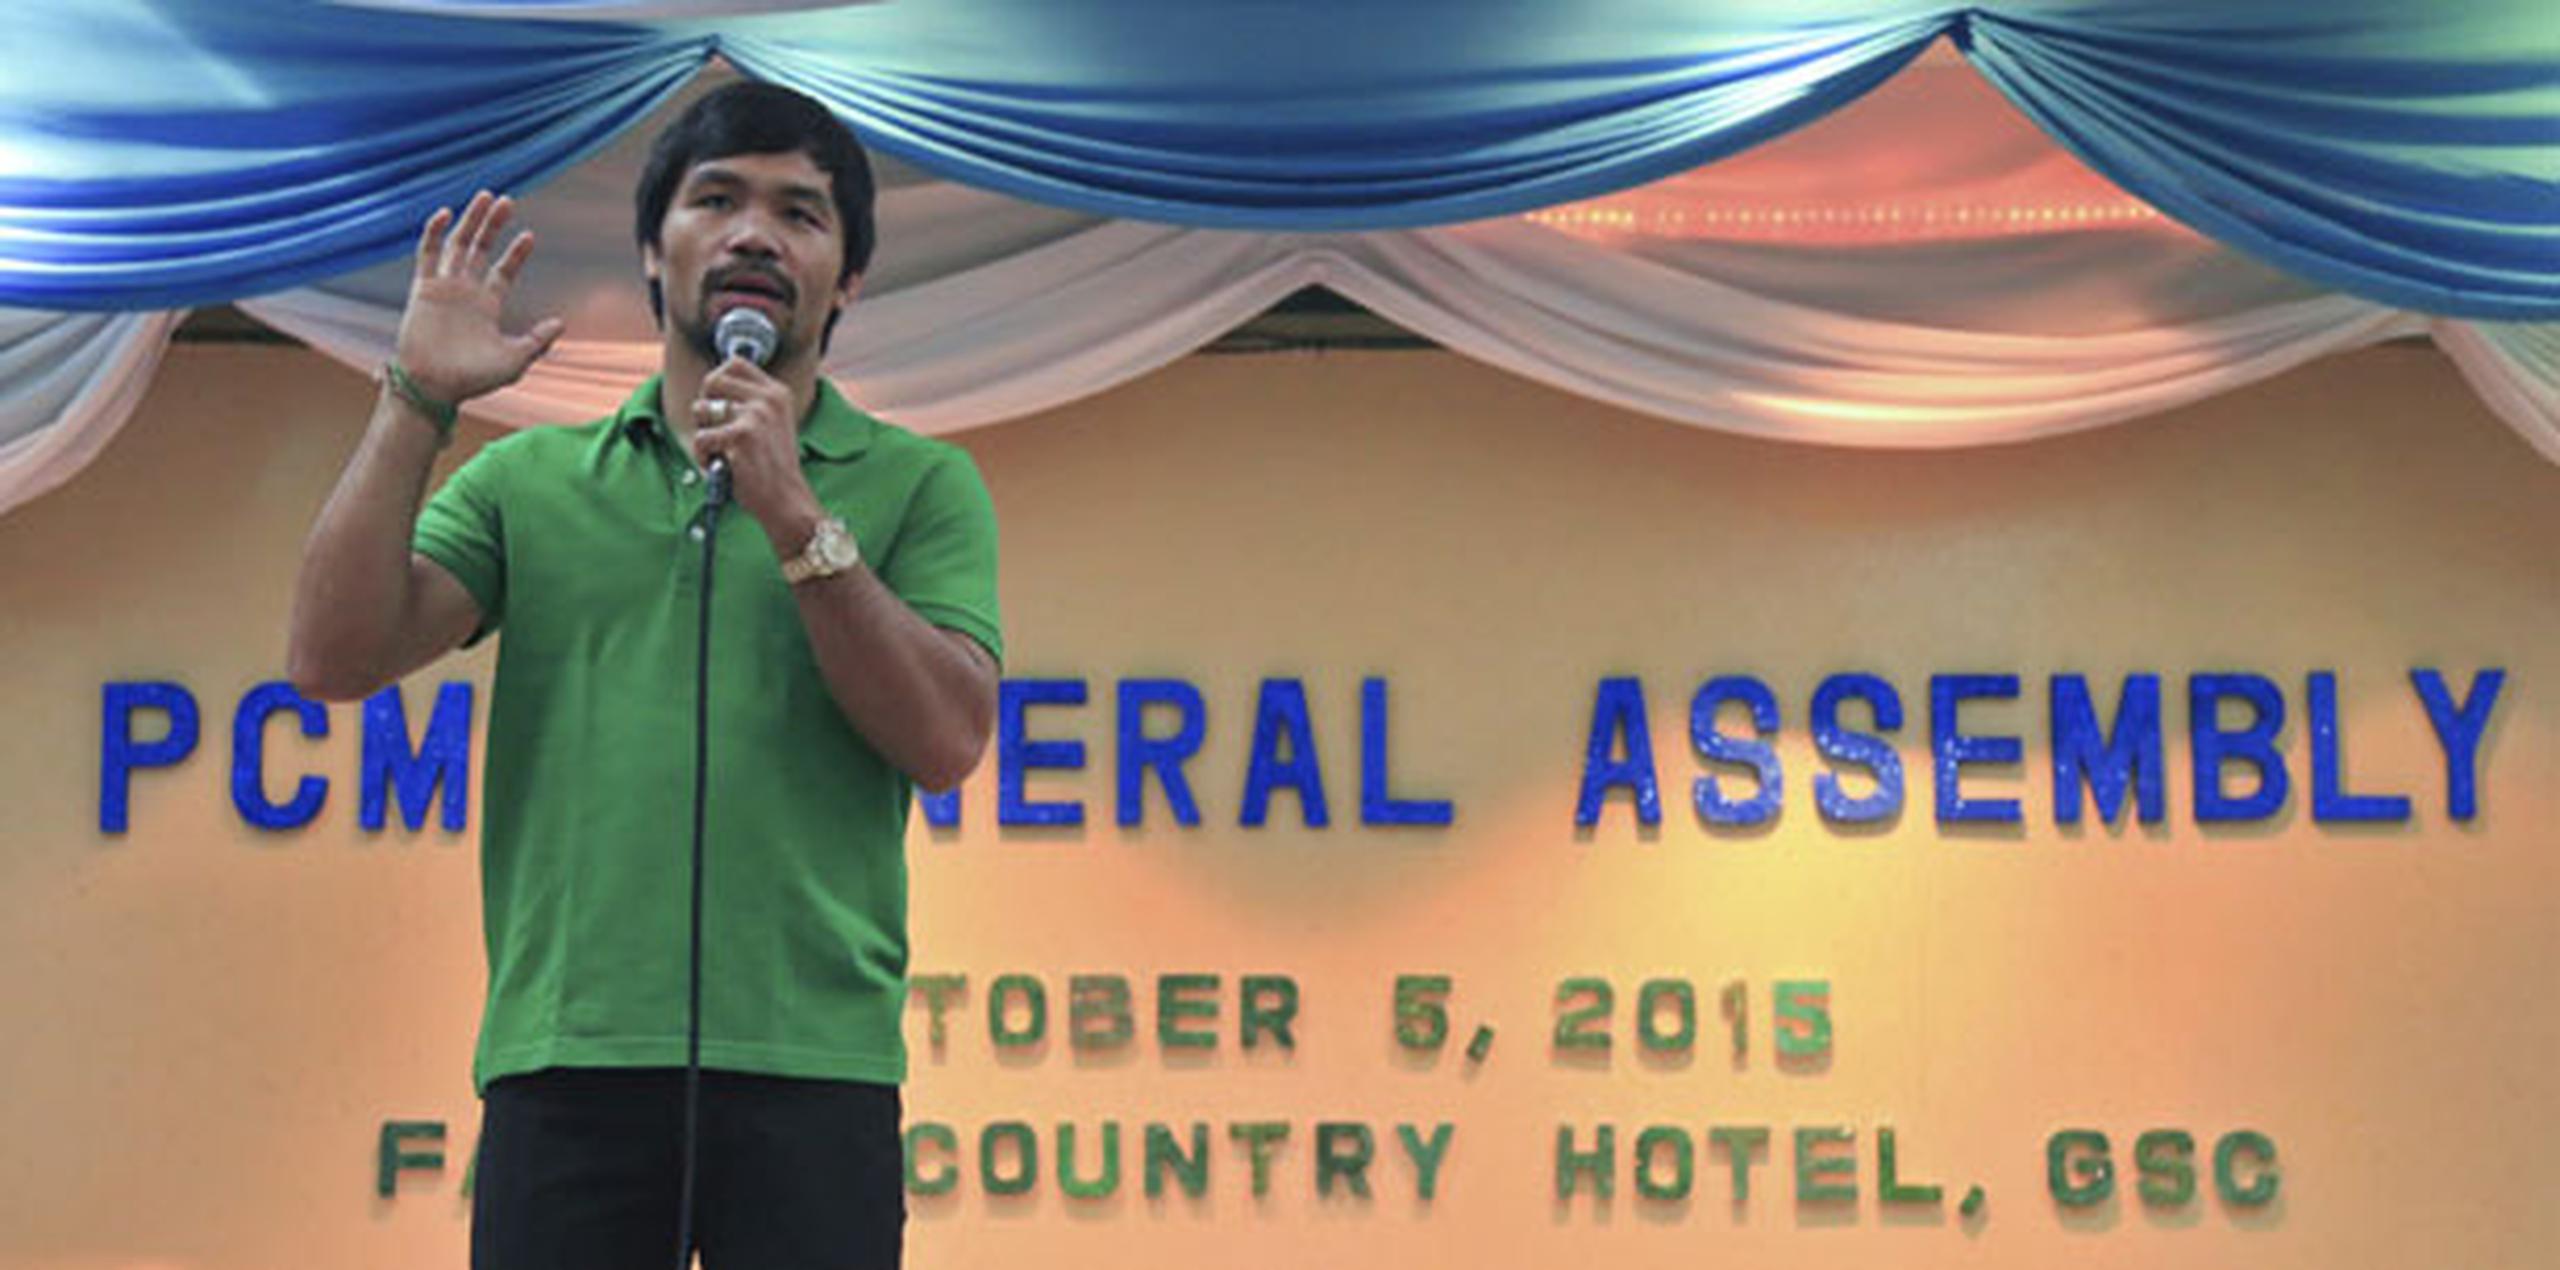 El pugilista, actualmente diputado por la provincia de Sarangani, anunció el lunes pasado que se presentará como candidato al Senado a las elecciones que se celebraran en mayo de 2016 en Filipinas. (EFE/Kim Windell Tiblani)